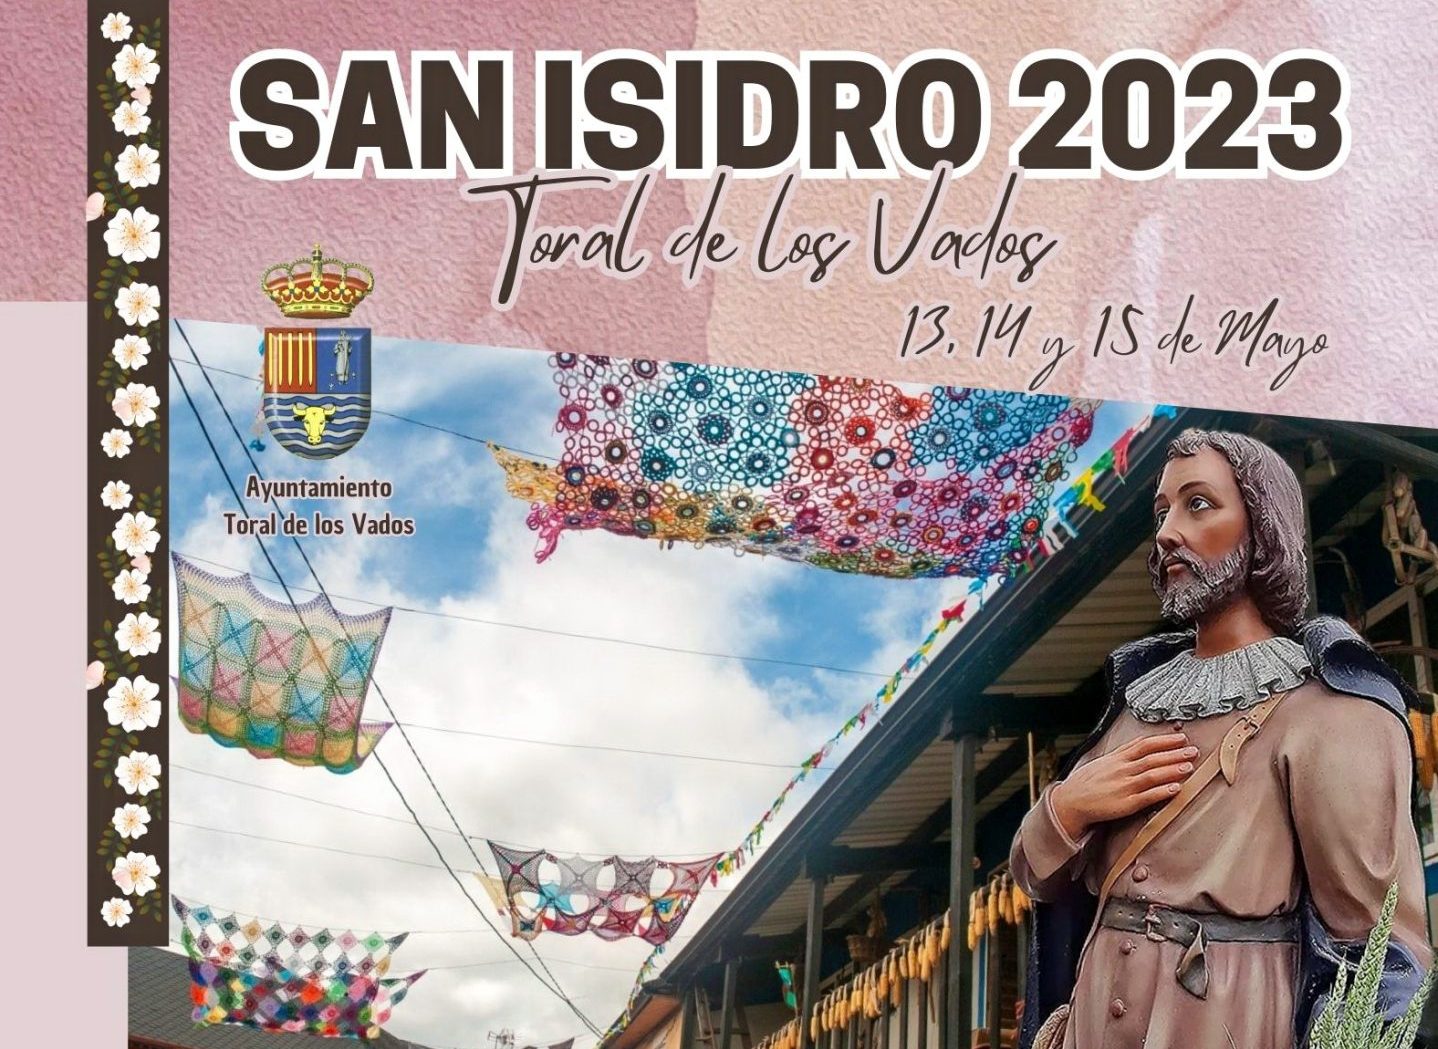 Toral de los Vados celebra San Isidro los días 13, 14 y 15 de mayo. Consulta la programación que han preparado 1